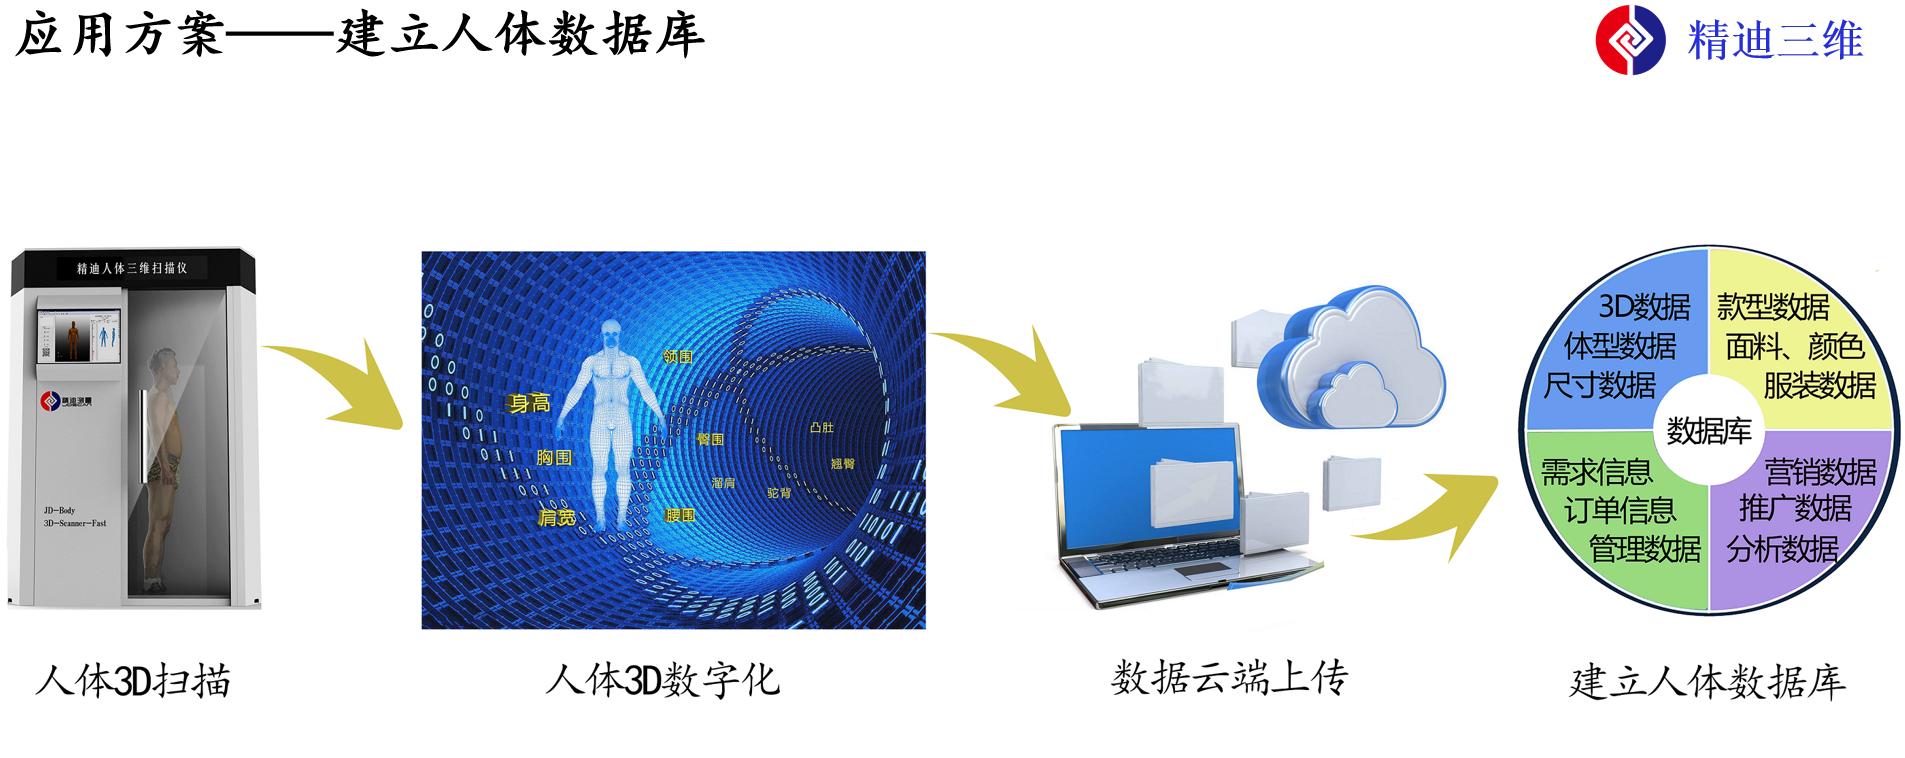 易麦斯便携移动人体3D三维扫描测量快速生成3D模型数据